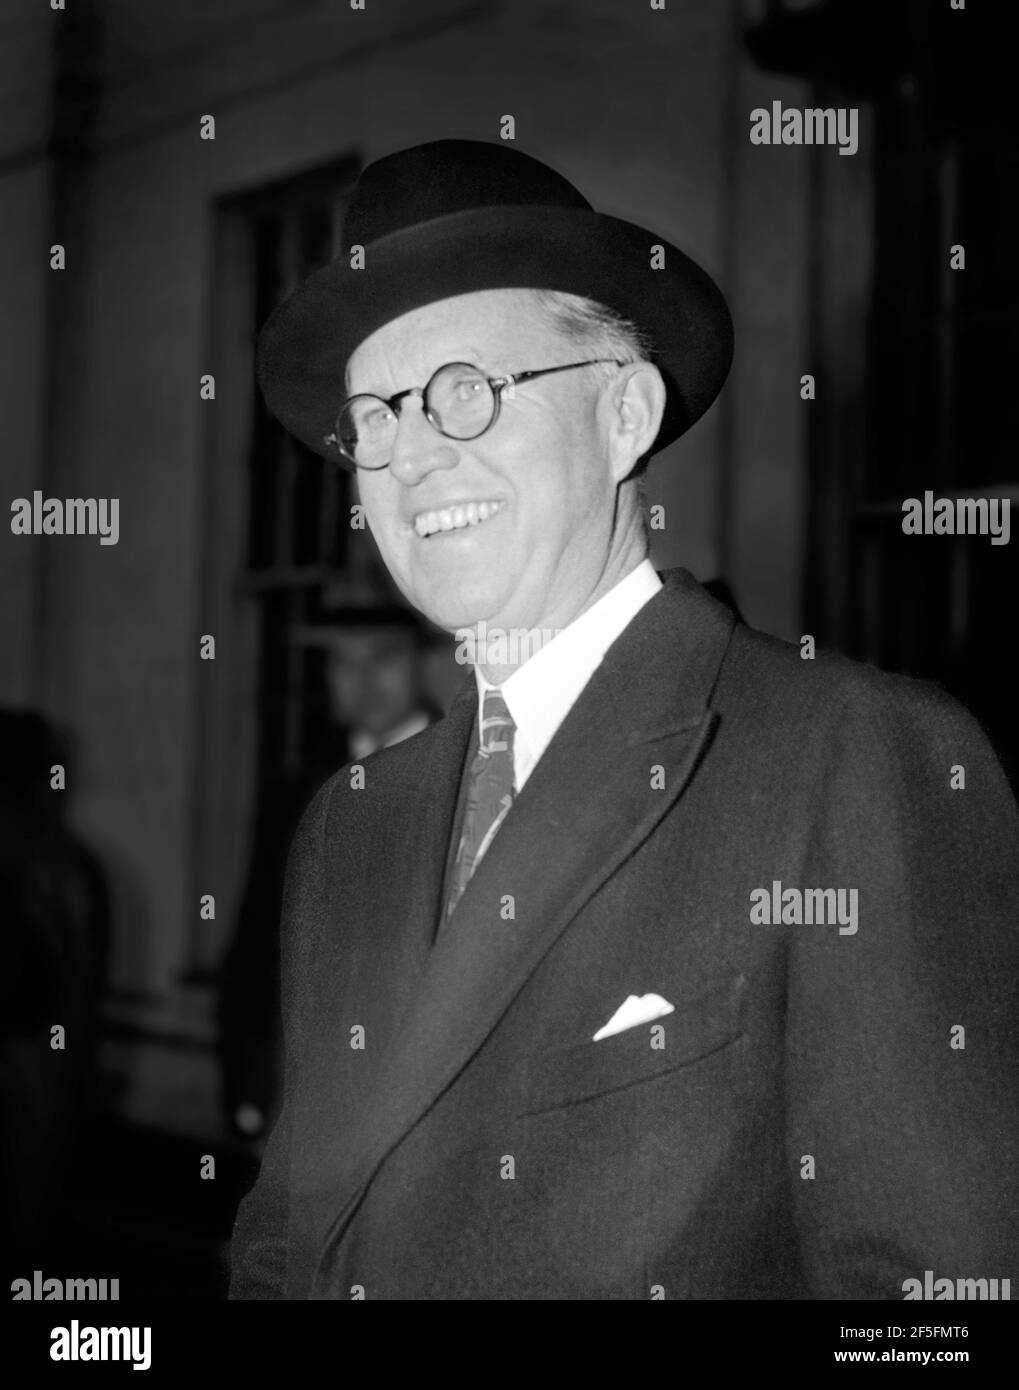 José Kennedy. Retrato del hombre de negocios y político estadounidense, Joseph Kennedy Sr. (1888-1969) cuando fue Embajador de Estados Unidos en Gran Bretaña en diciembre de 1939, foto de Harris y Ewing Foto de stock